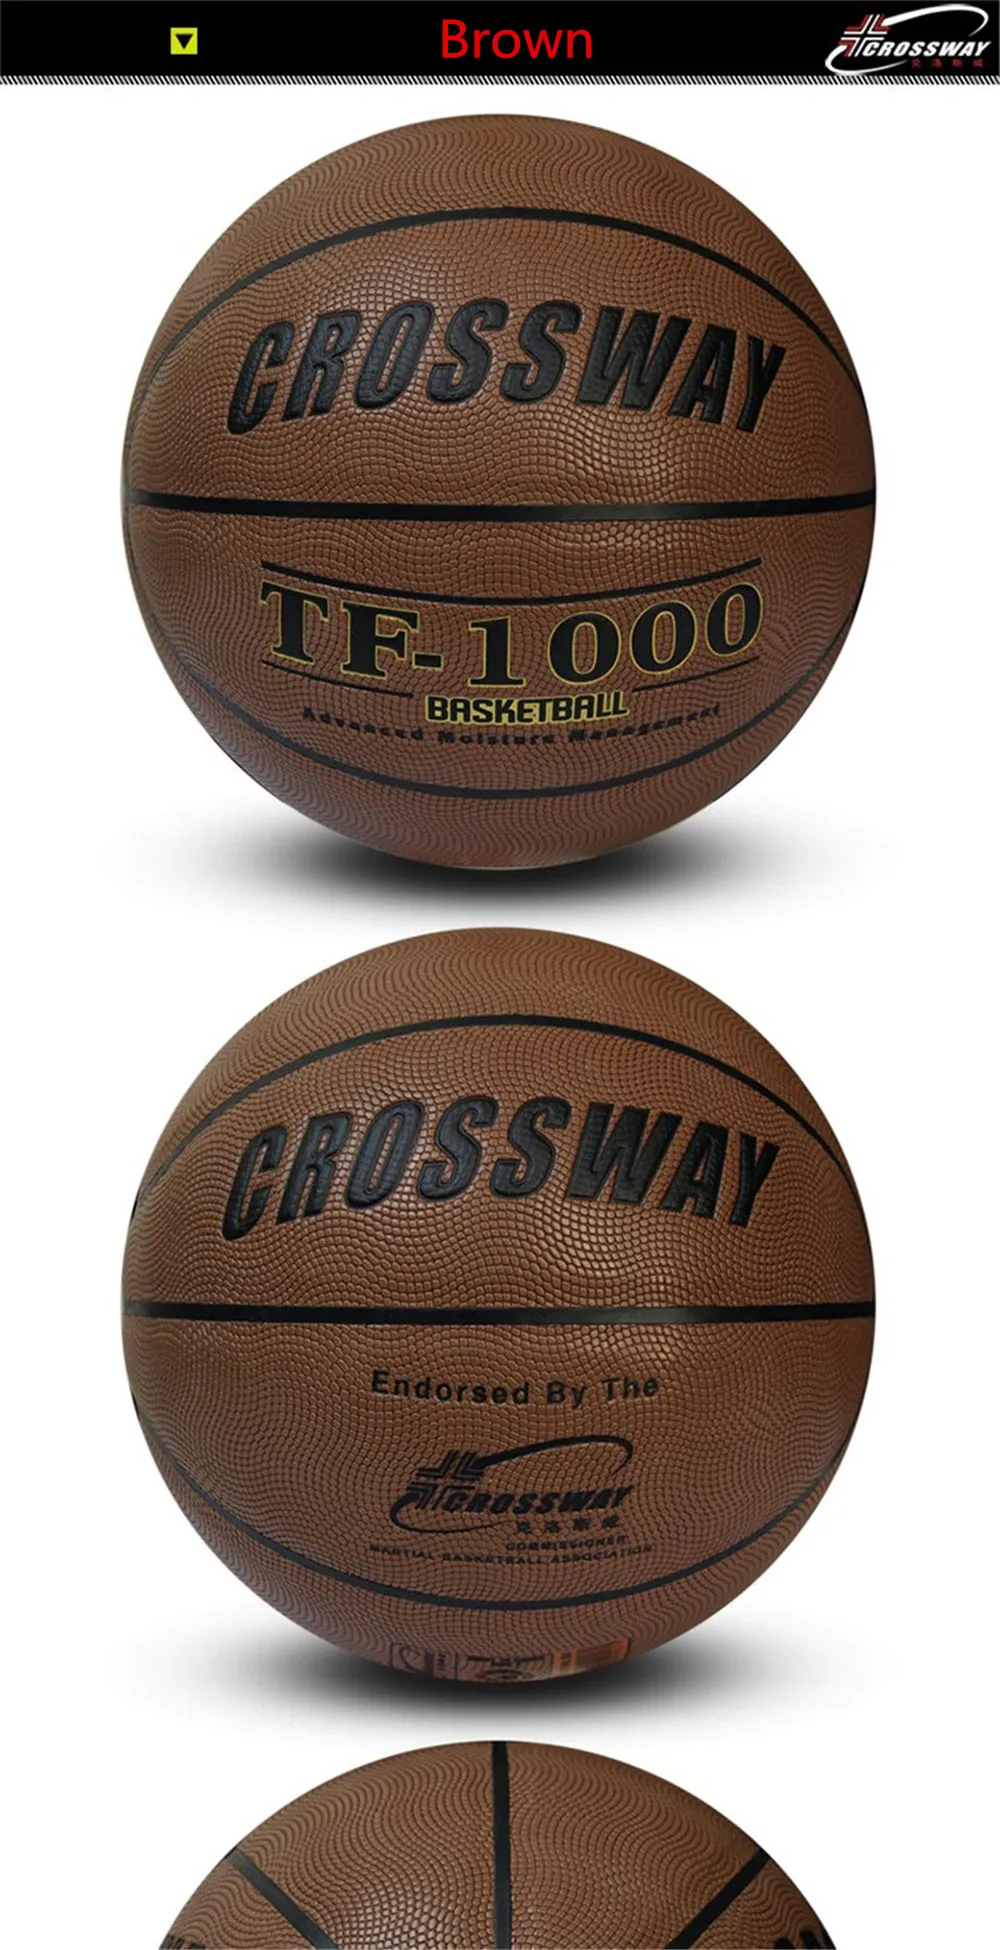 Главная & Away Crossway 2018 Лидер продаж Крытый Размеры 7 кожа баскетбольный мяч ПУ Обучение конкуренция Баскетбол